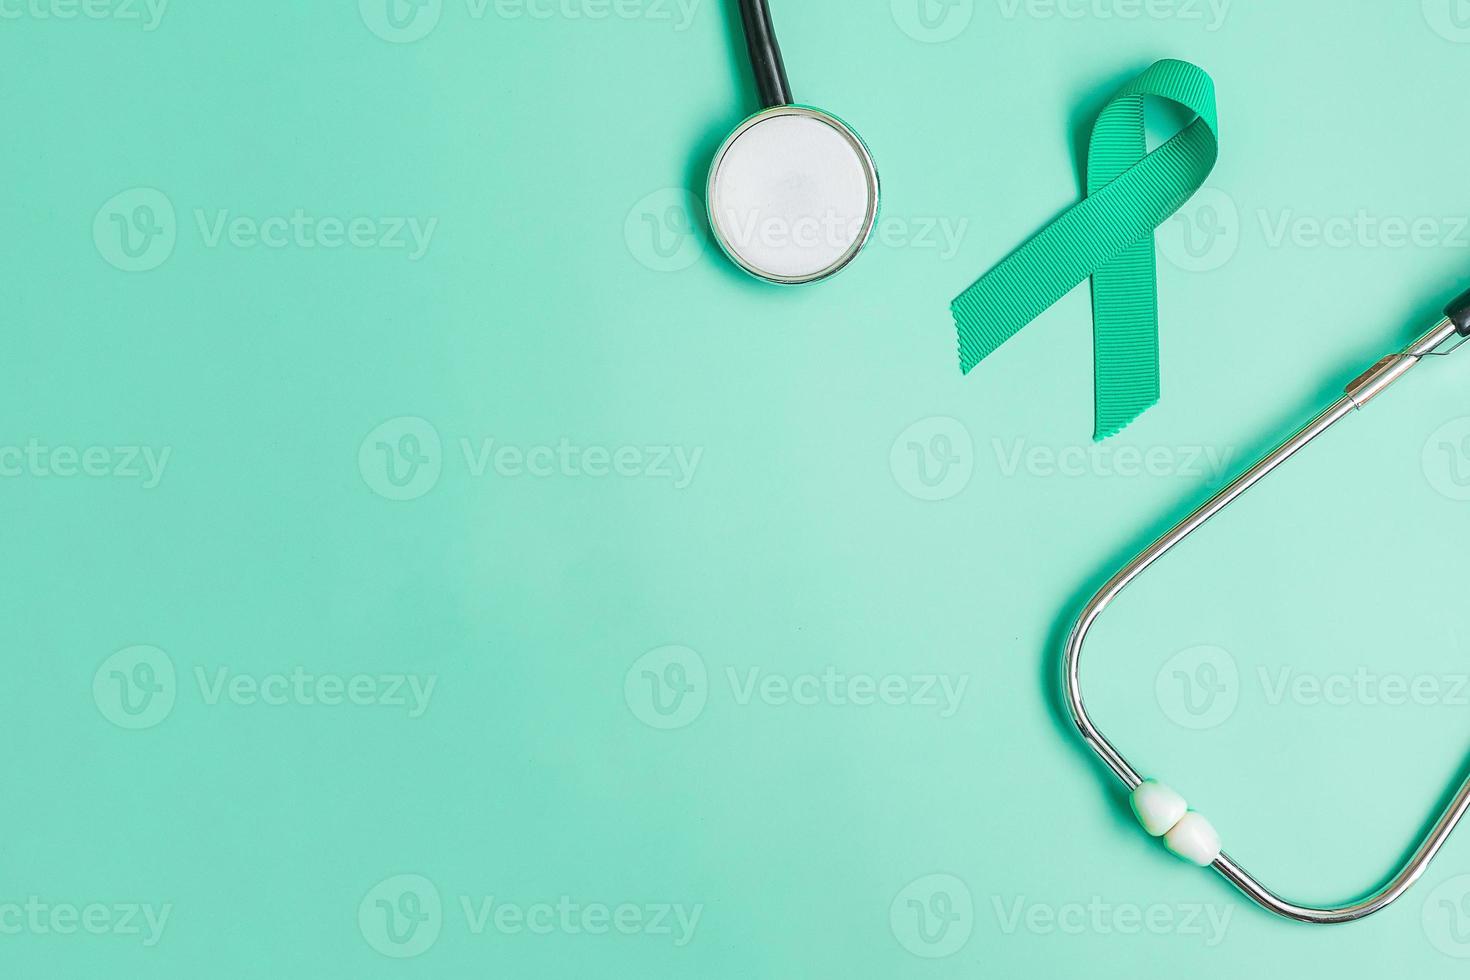 september bewusstseinsmonat für eierstockkrebs, blaugrünes band mit stethoskop zur unterstützung lebender menschen und krankheit. konzepte für das gesundheitswesen und den weltkrebstag foto